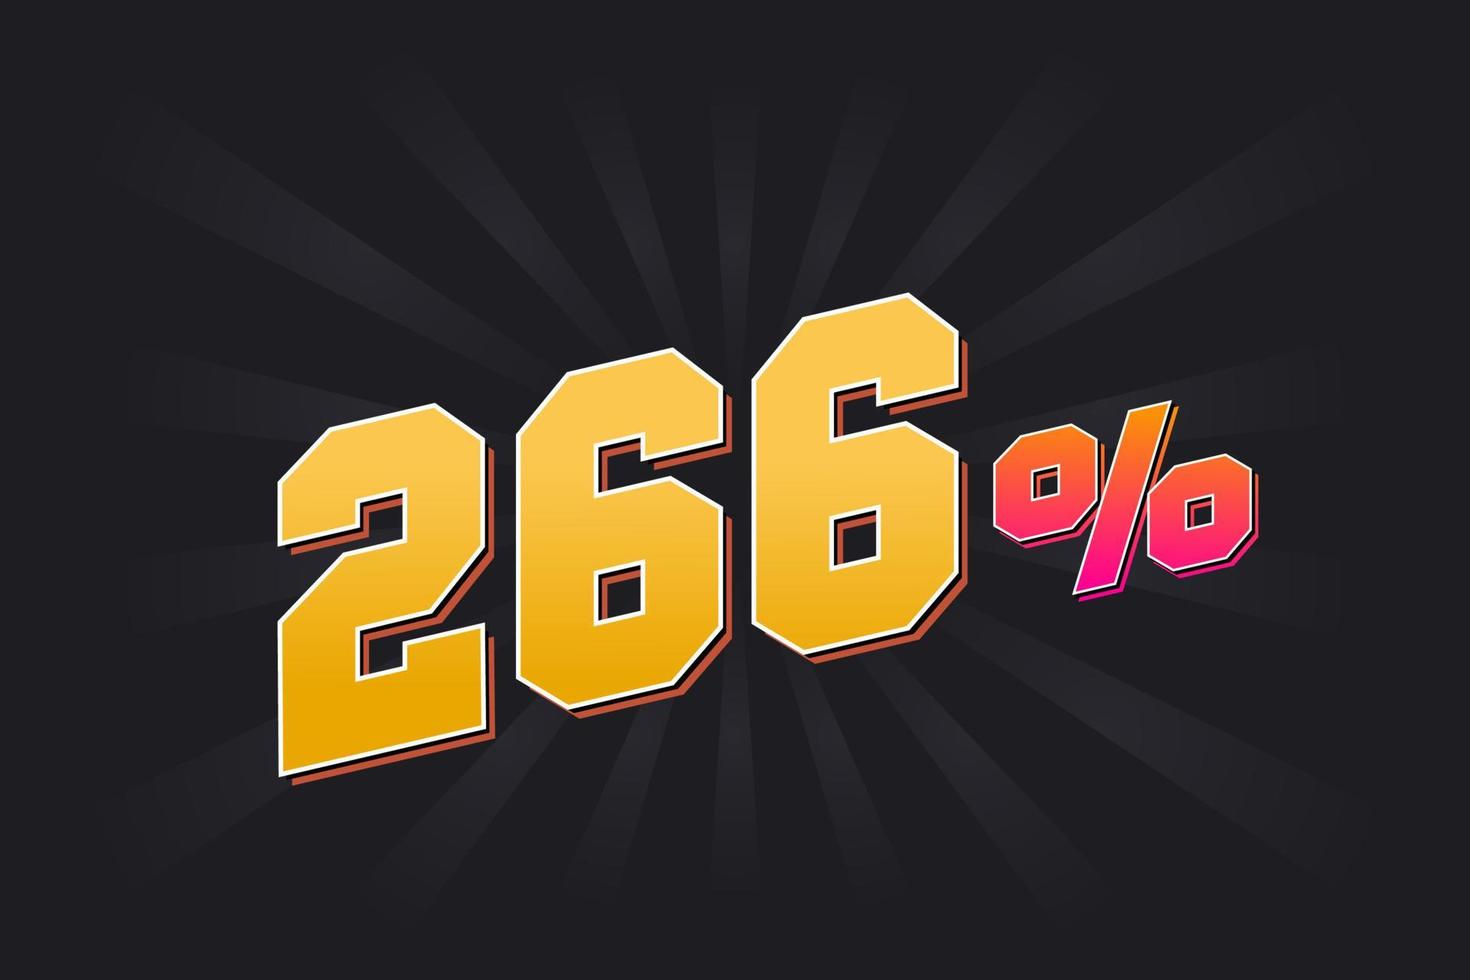 266 korting banier met donker achtergrond en geel tekst. 266 procent verkoop promotionele ontwerp. vector